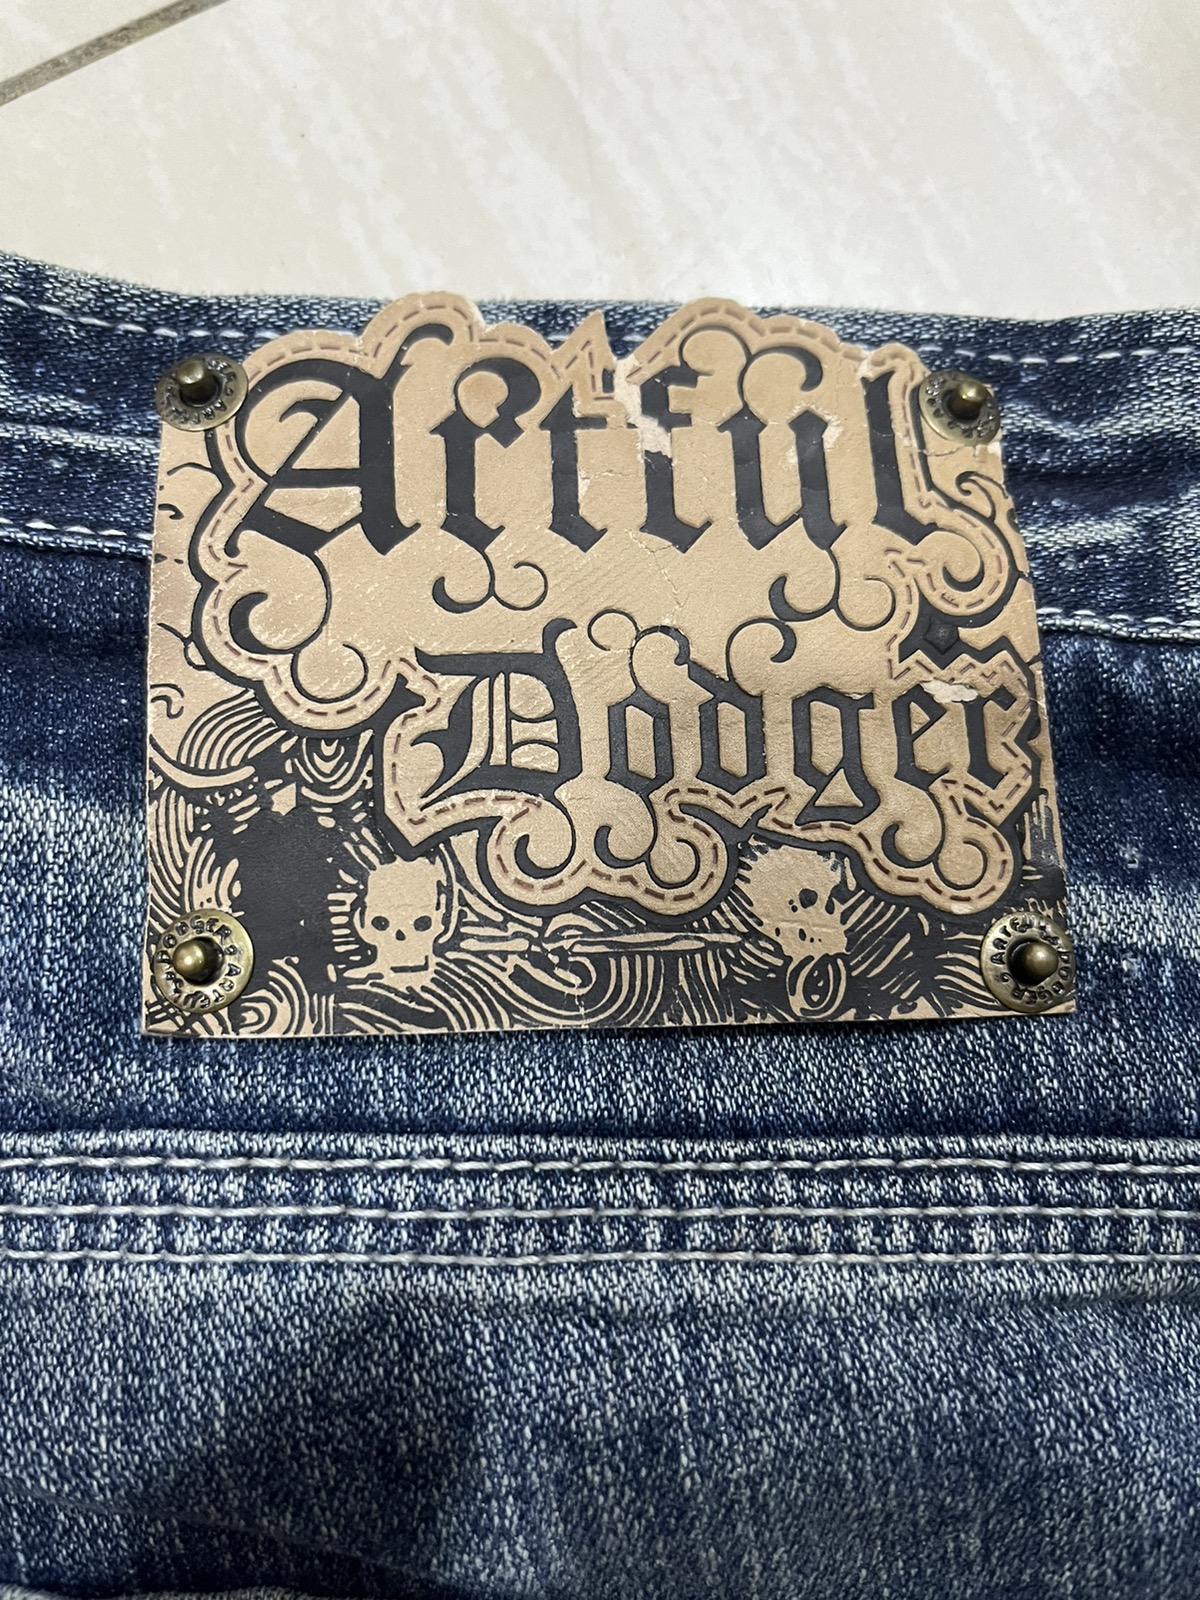 Vintage - Artful dodger - 9